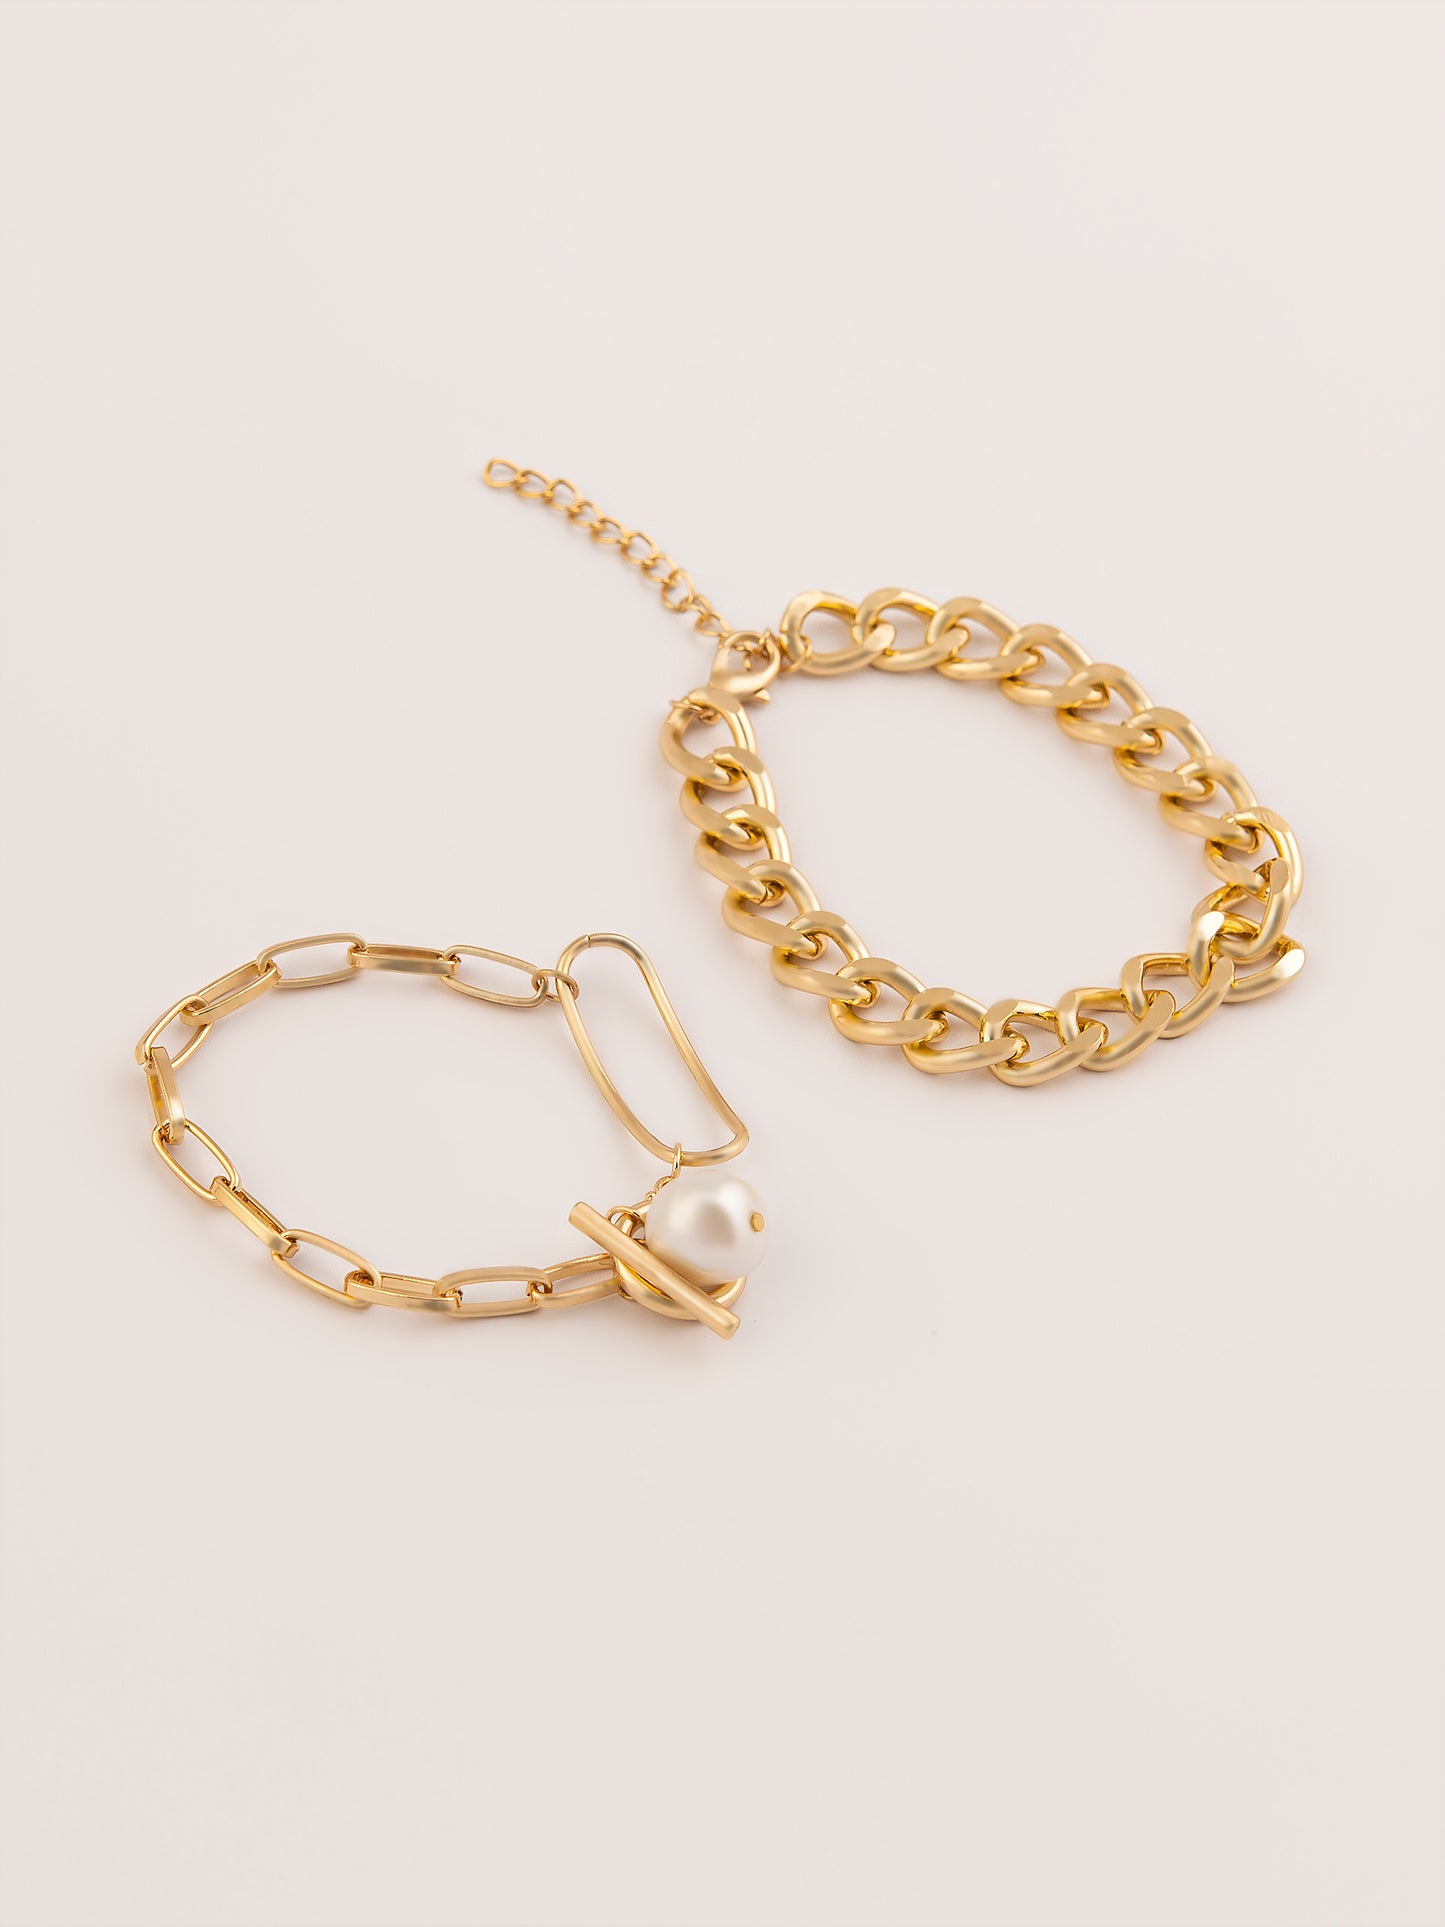 Loop Chain Bracelet Set